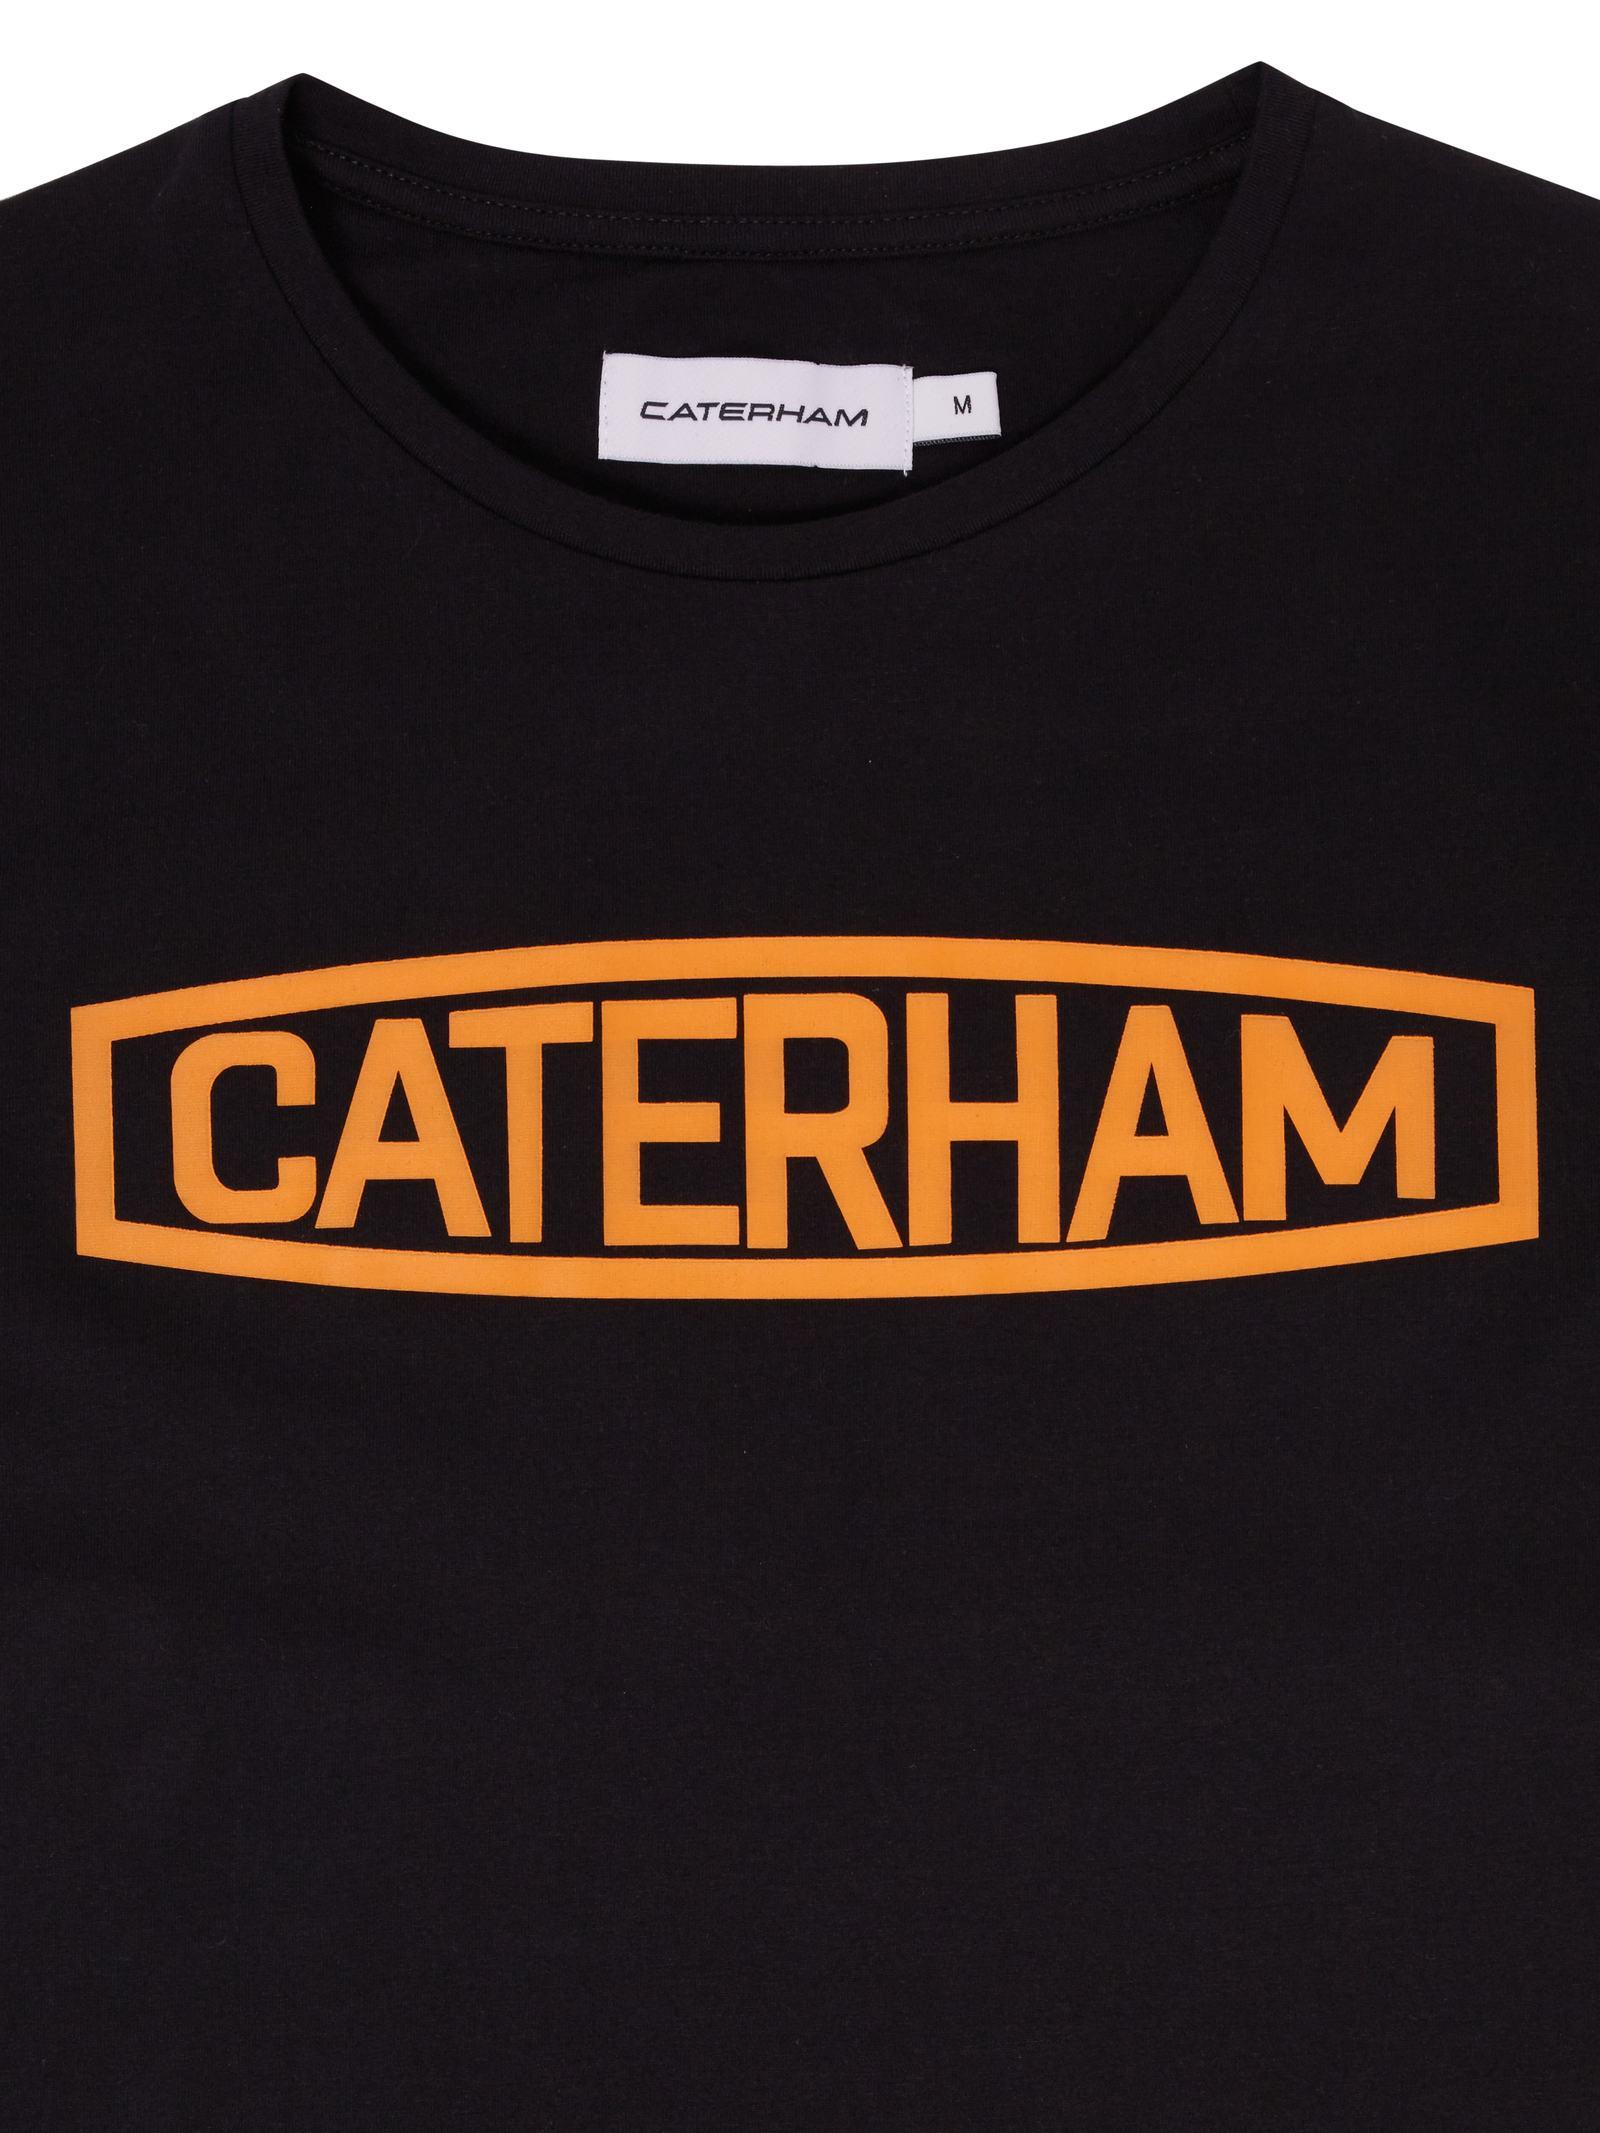 Caterham Logo - Caterham Logo Tee Black and Orange